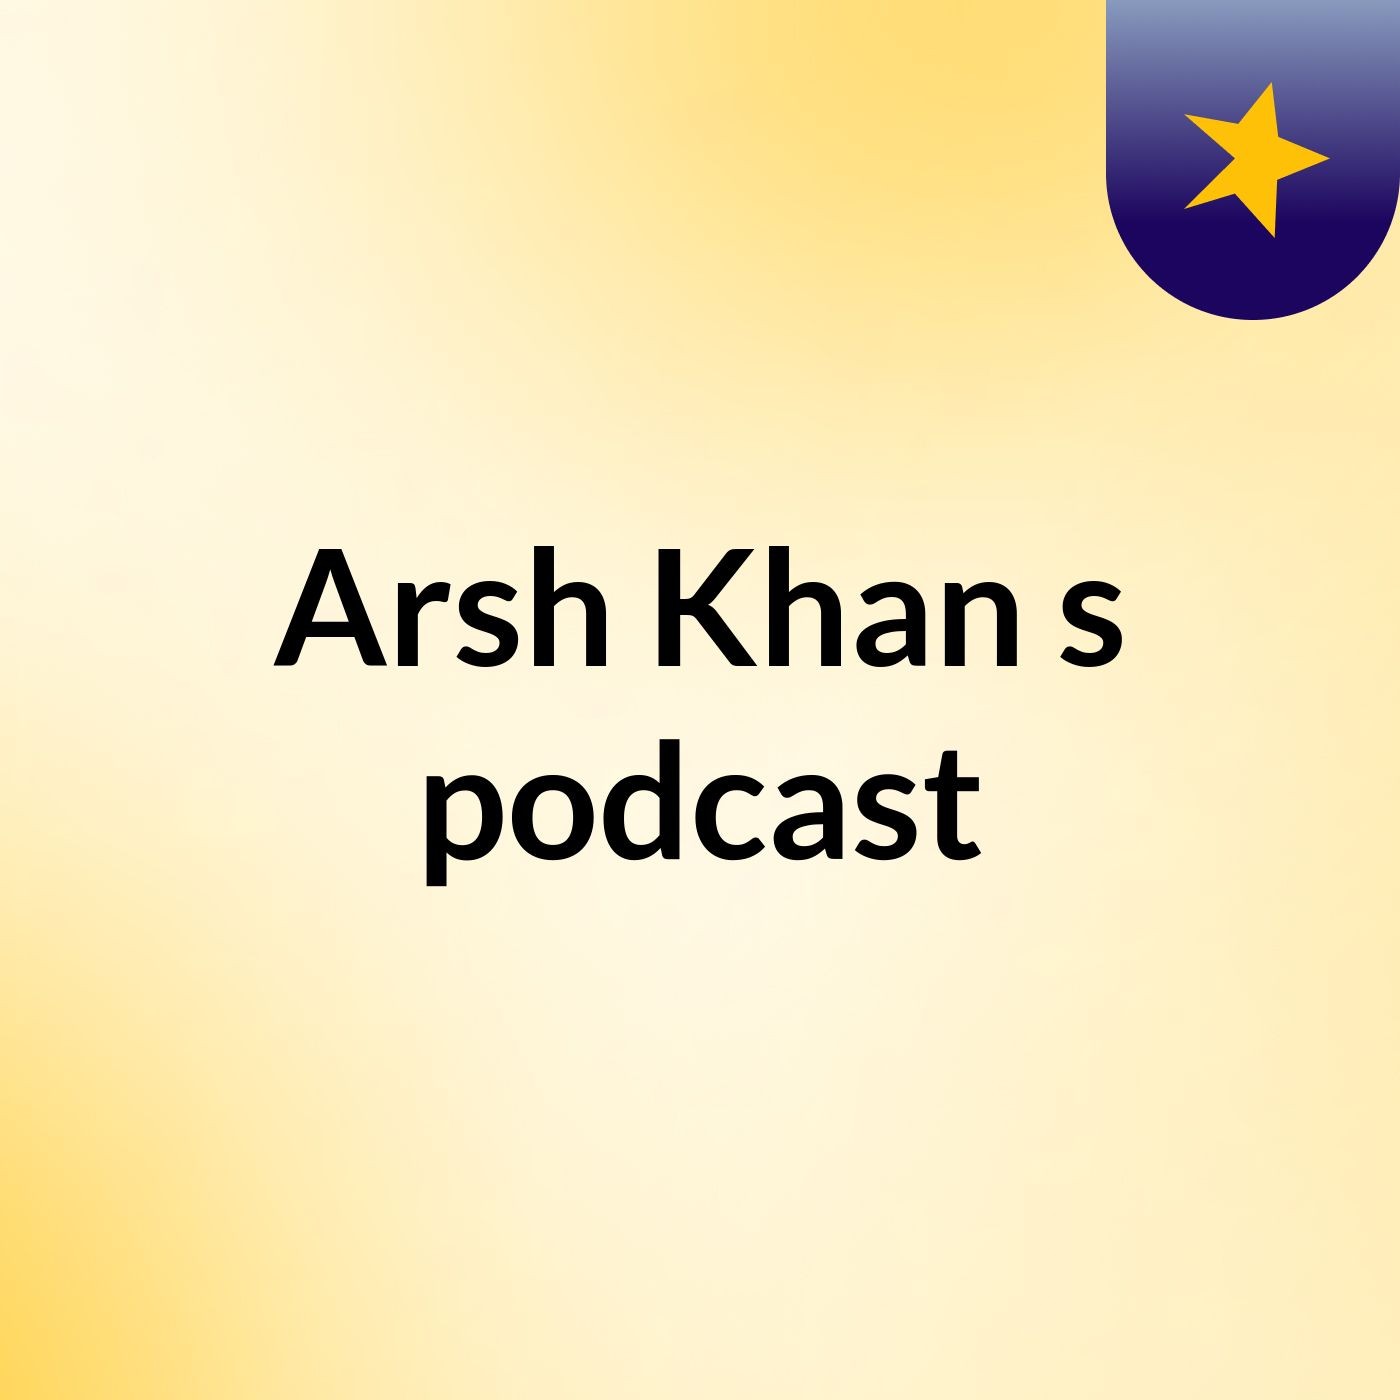 Episode 7 - Arsh Khan's podcast